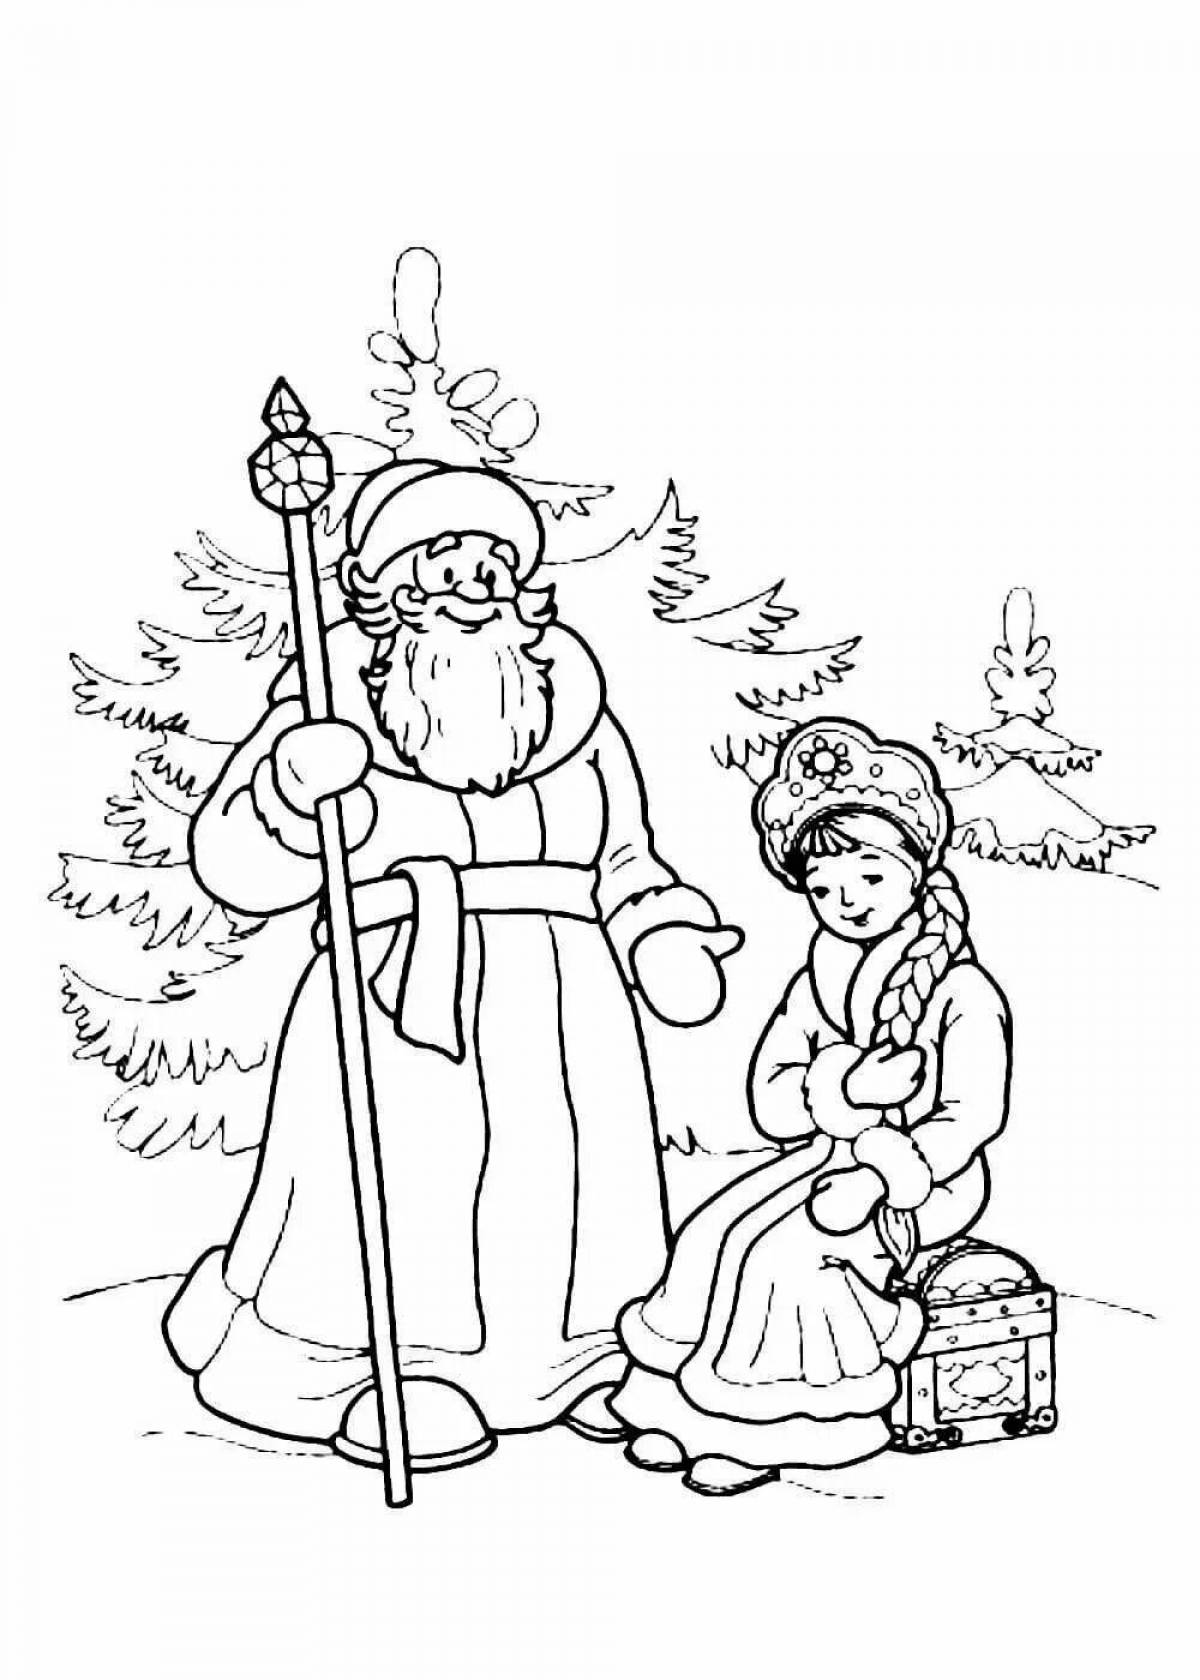 Иллюстрация к сказке Морозко раскраска